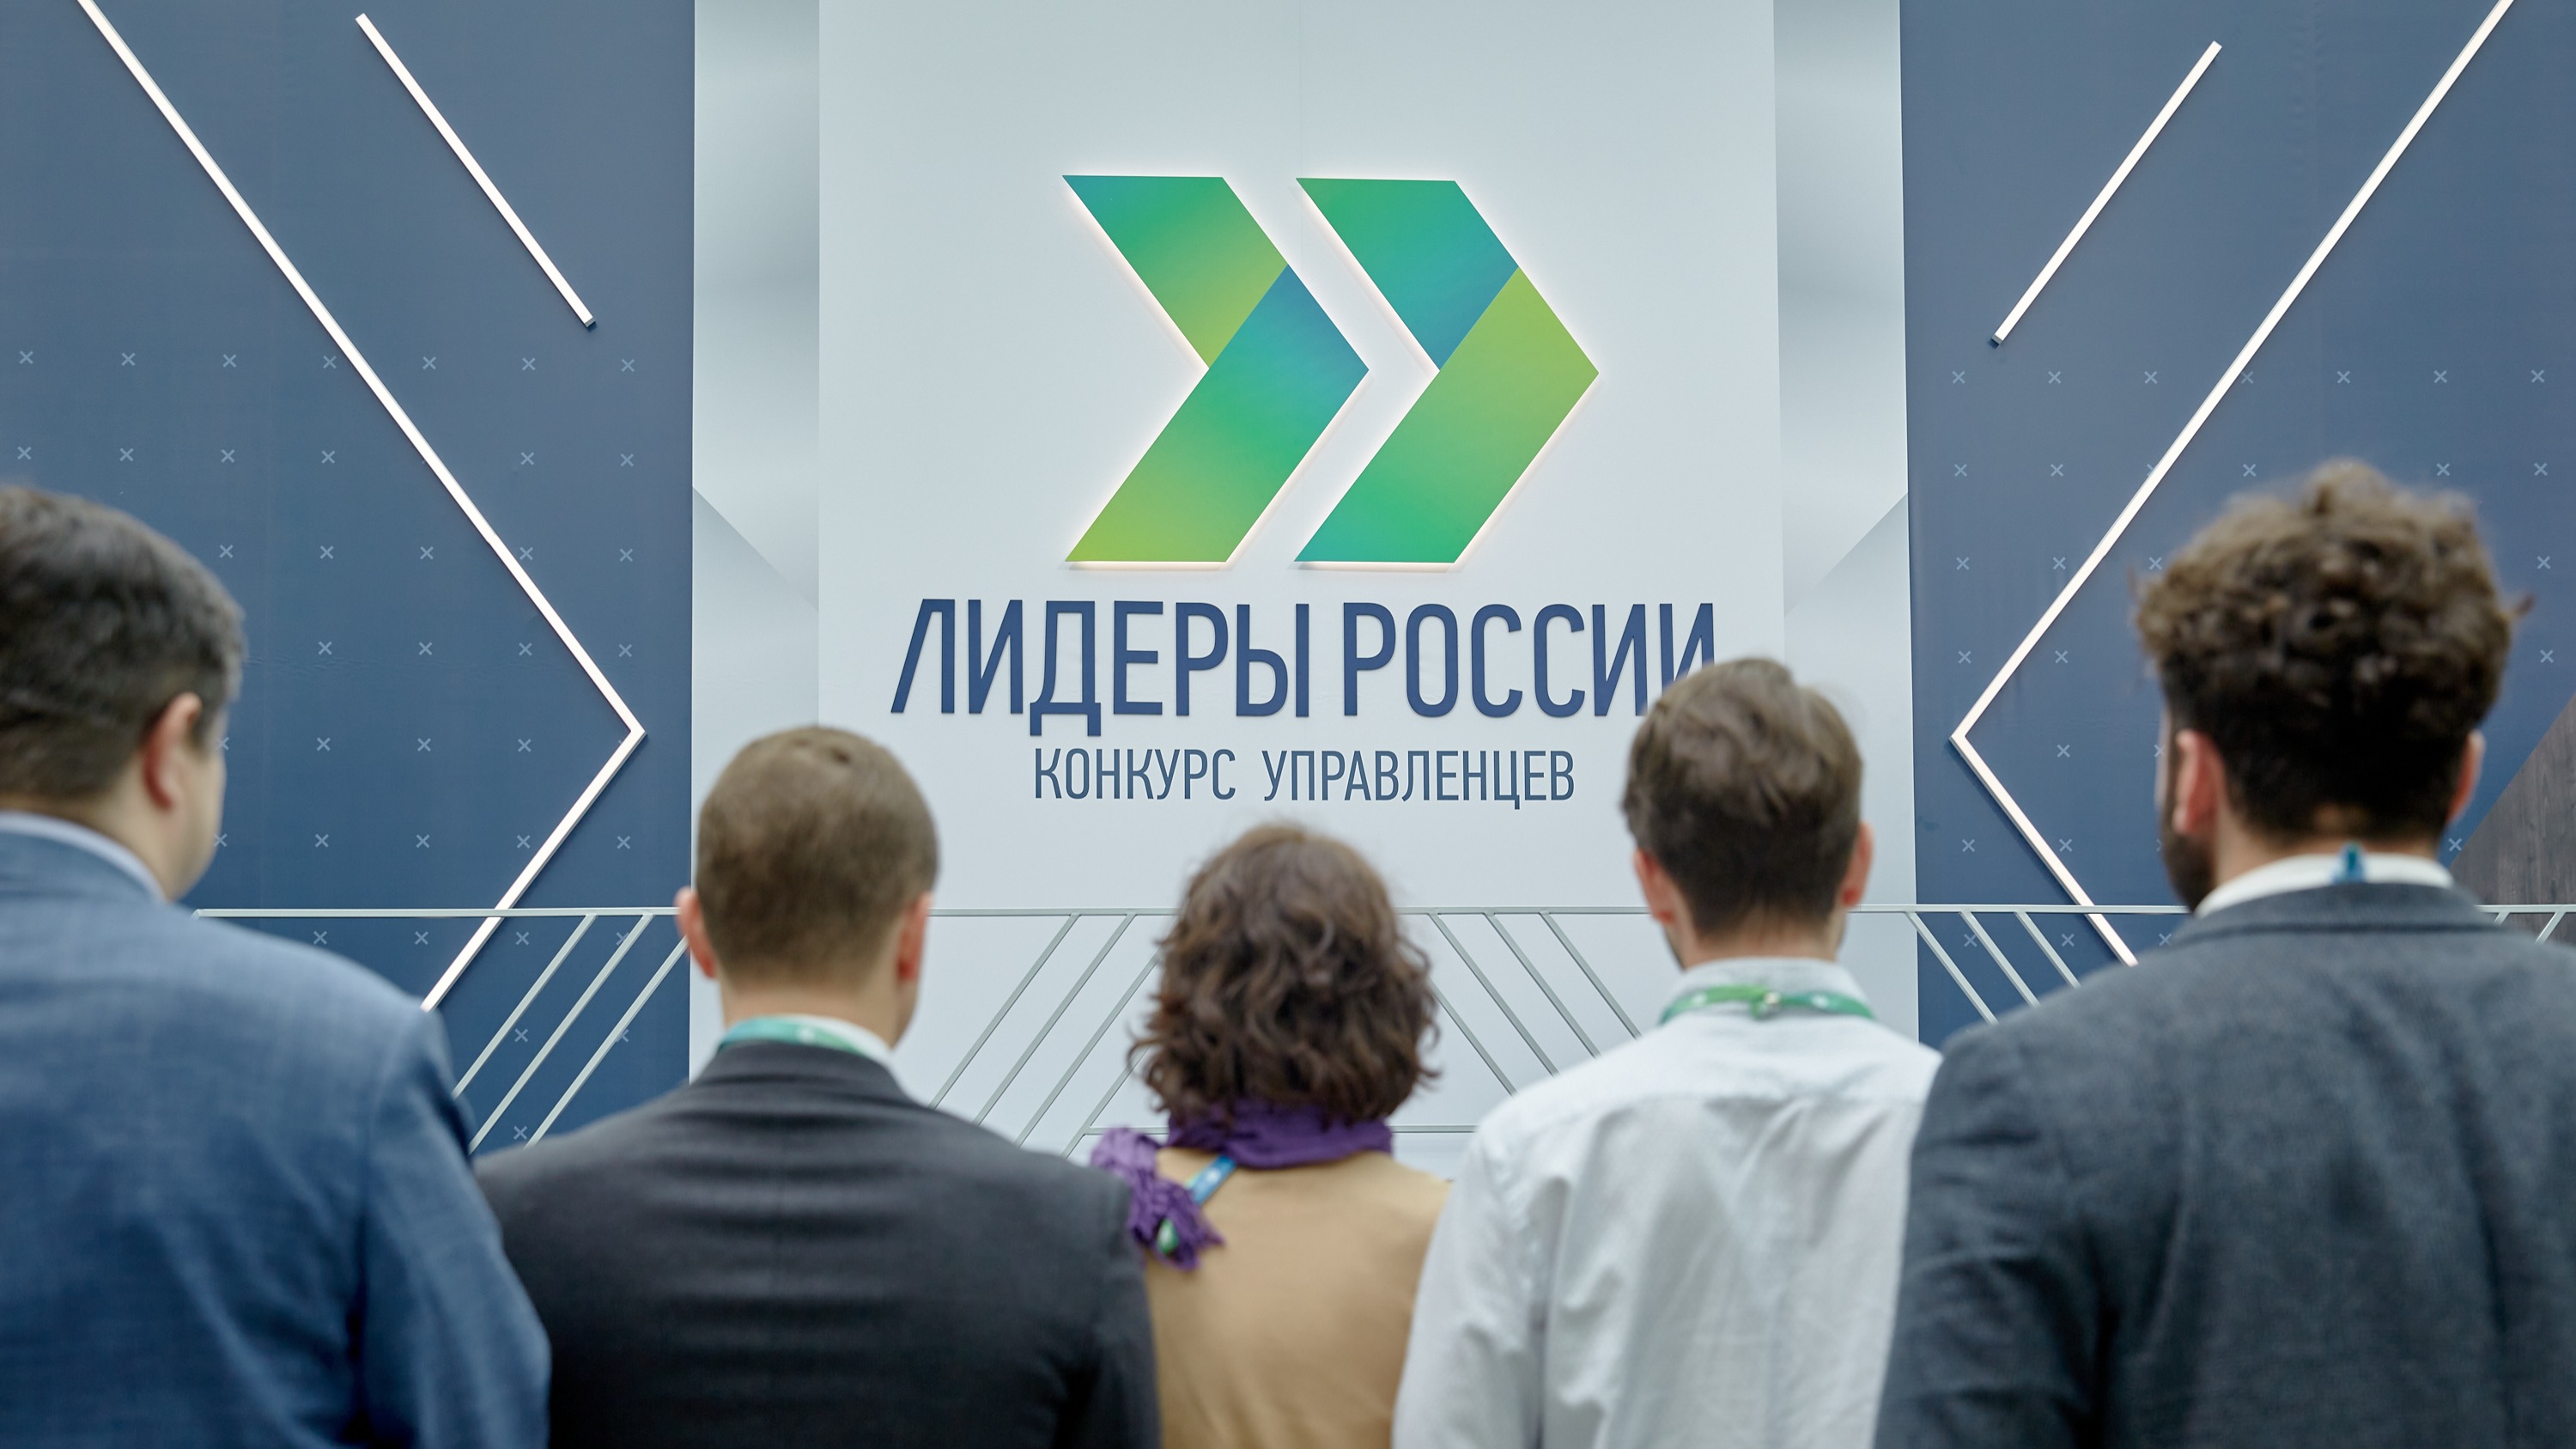 4 апреля стартует пятый юбилейный конкурс управленцев «Лидеры России» 